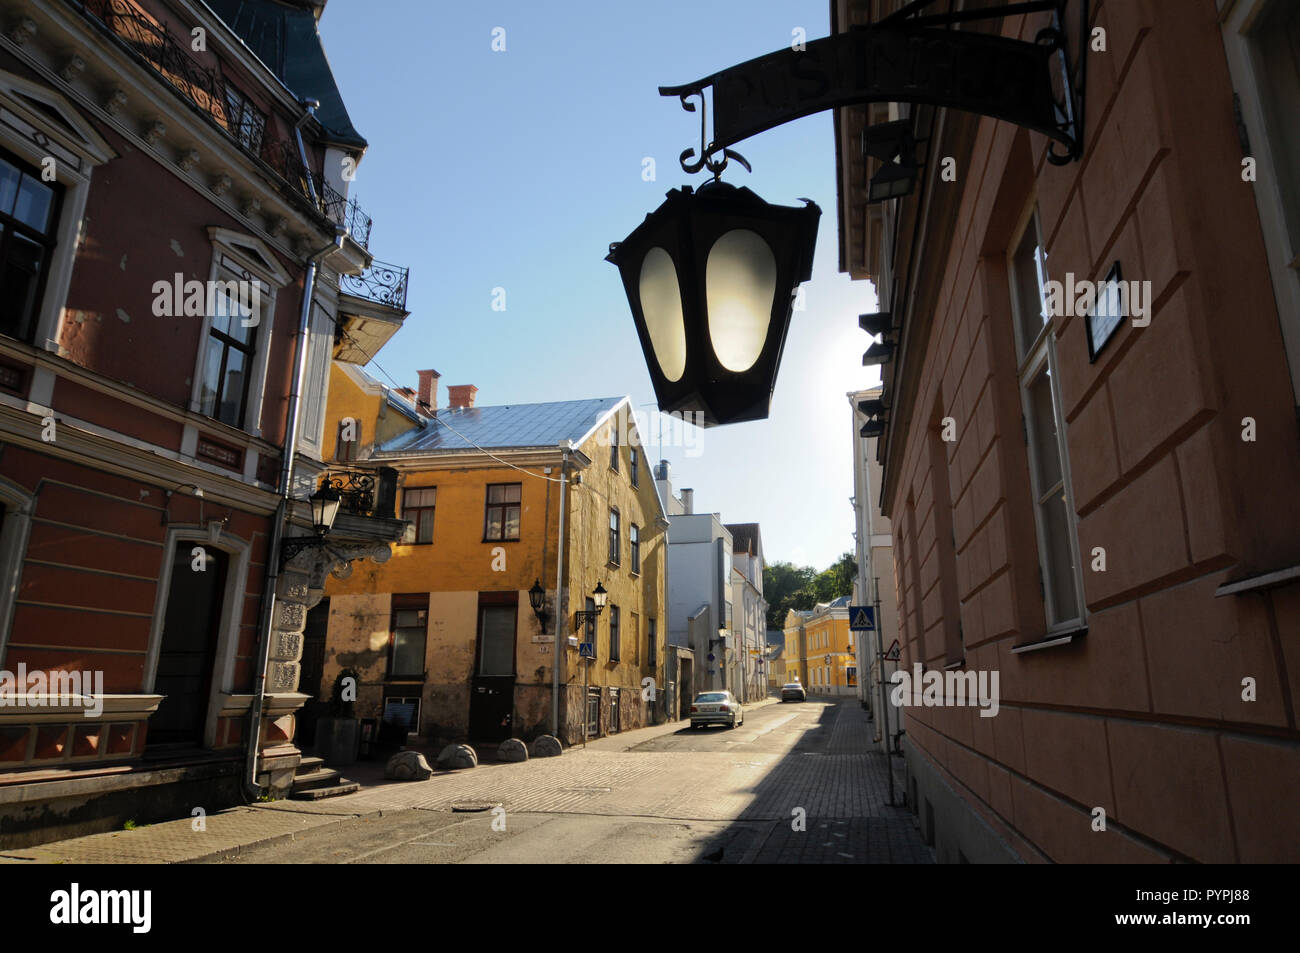 Streets of Tartu Old Town, Estonia Stock Photo